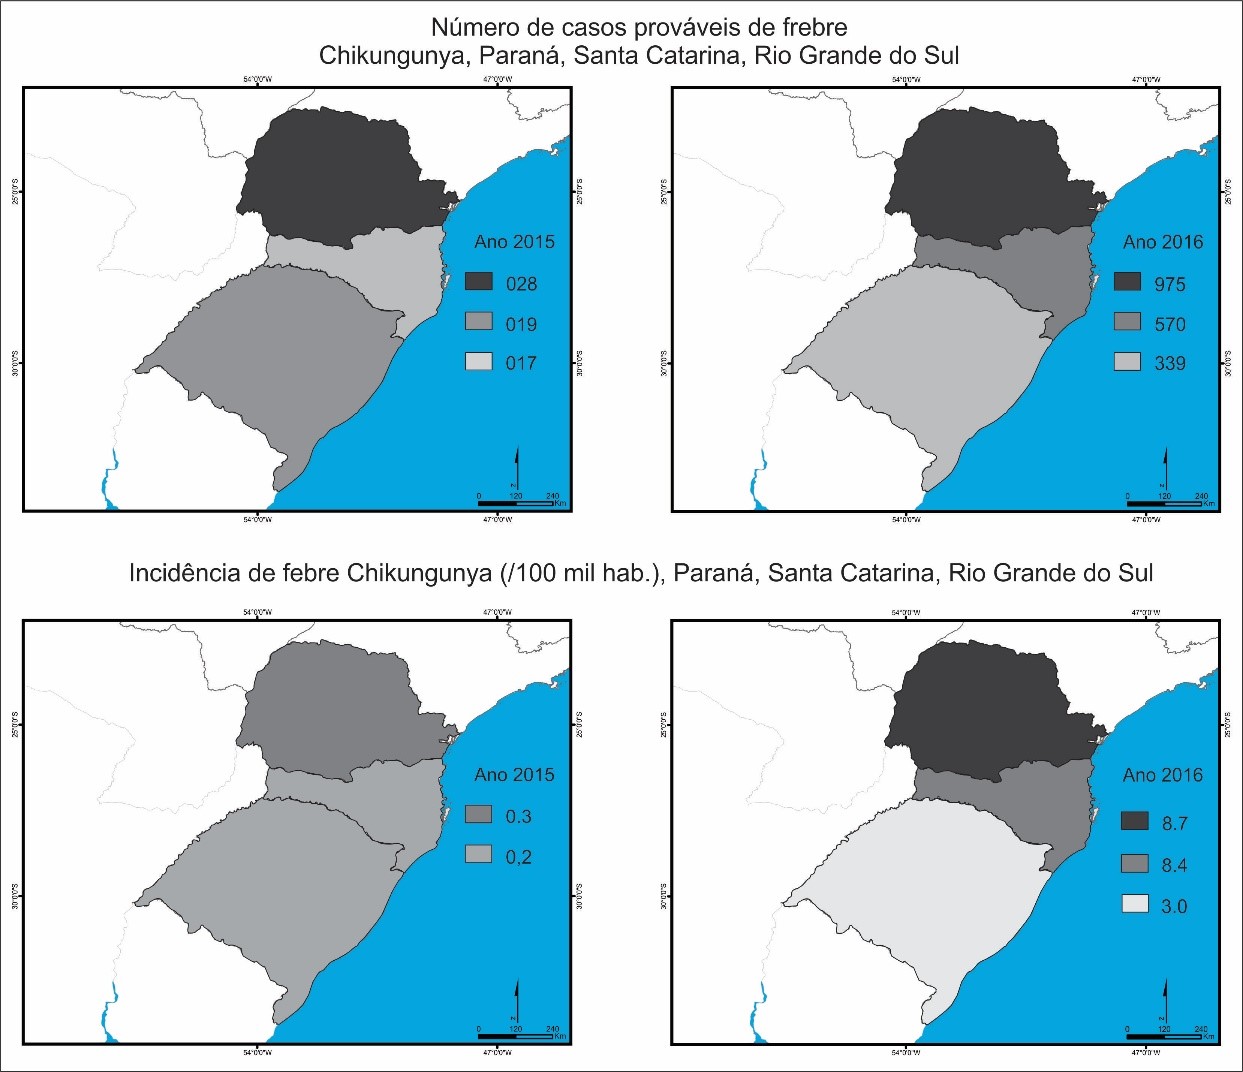 Número de casos prováveis de febre chikungunya e taxa de incidência no Paraná, Santa Catarina e Rio Grande do Sul em 2015 e 2016